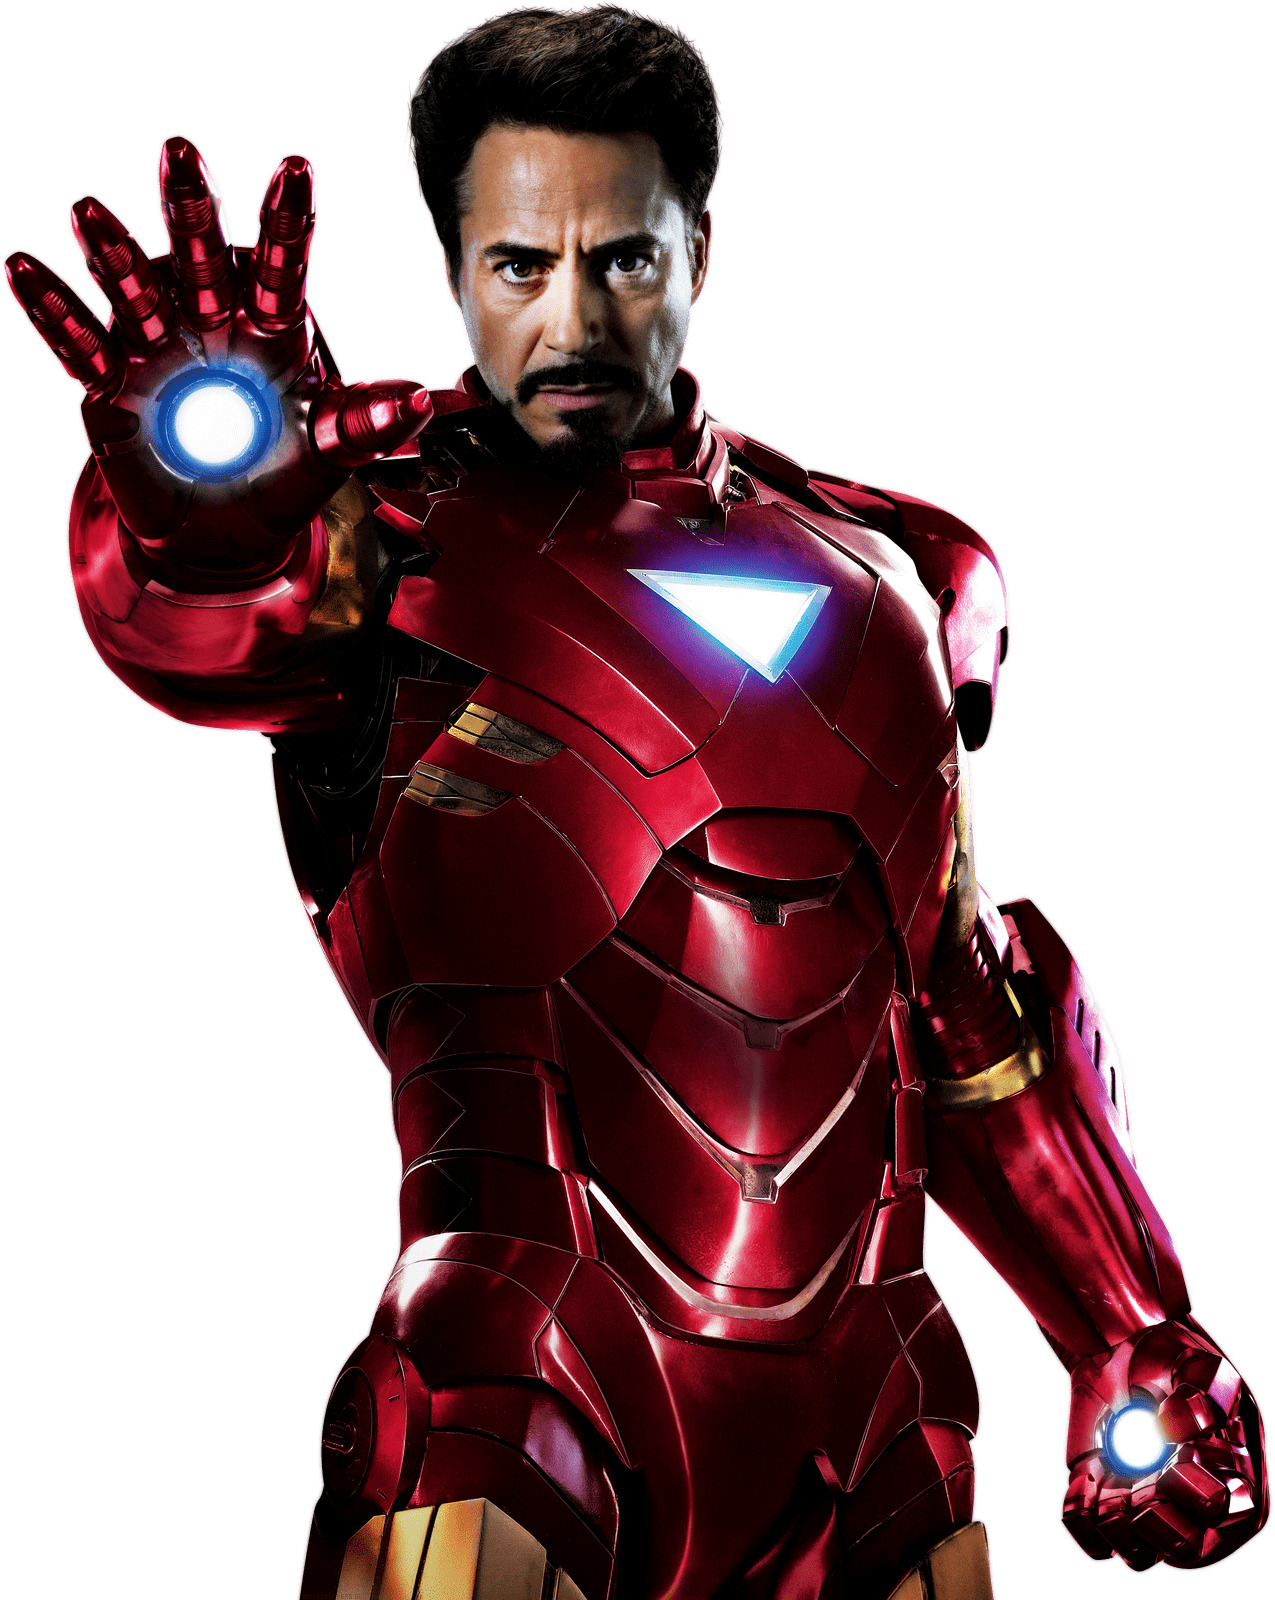 Iron Man Robert Downey Jr. icons